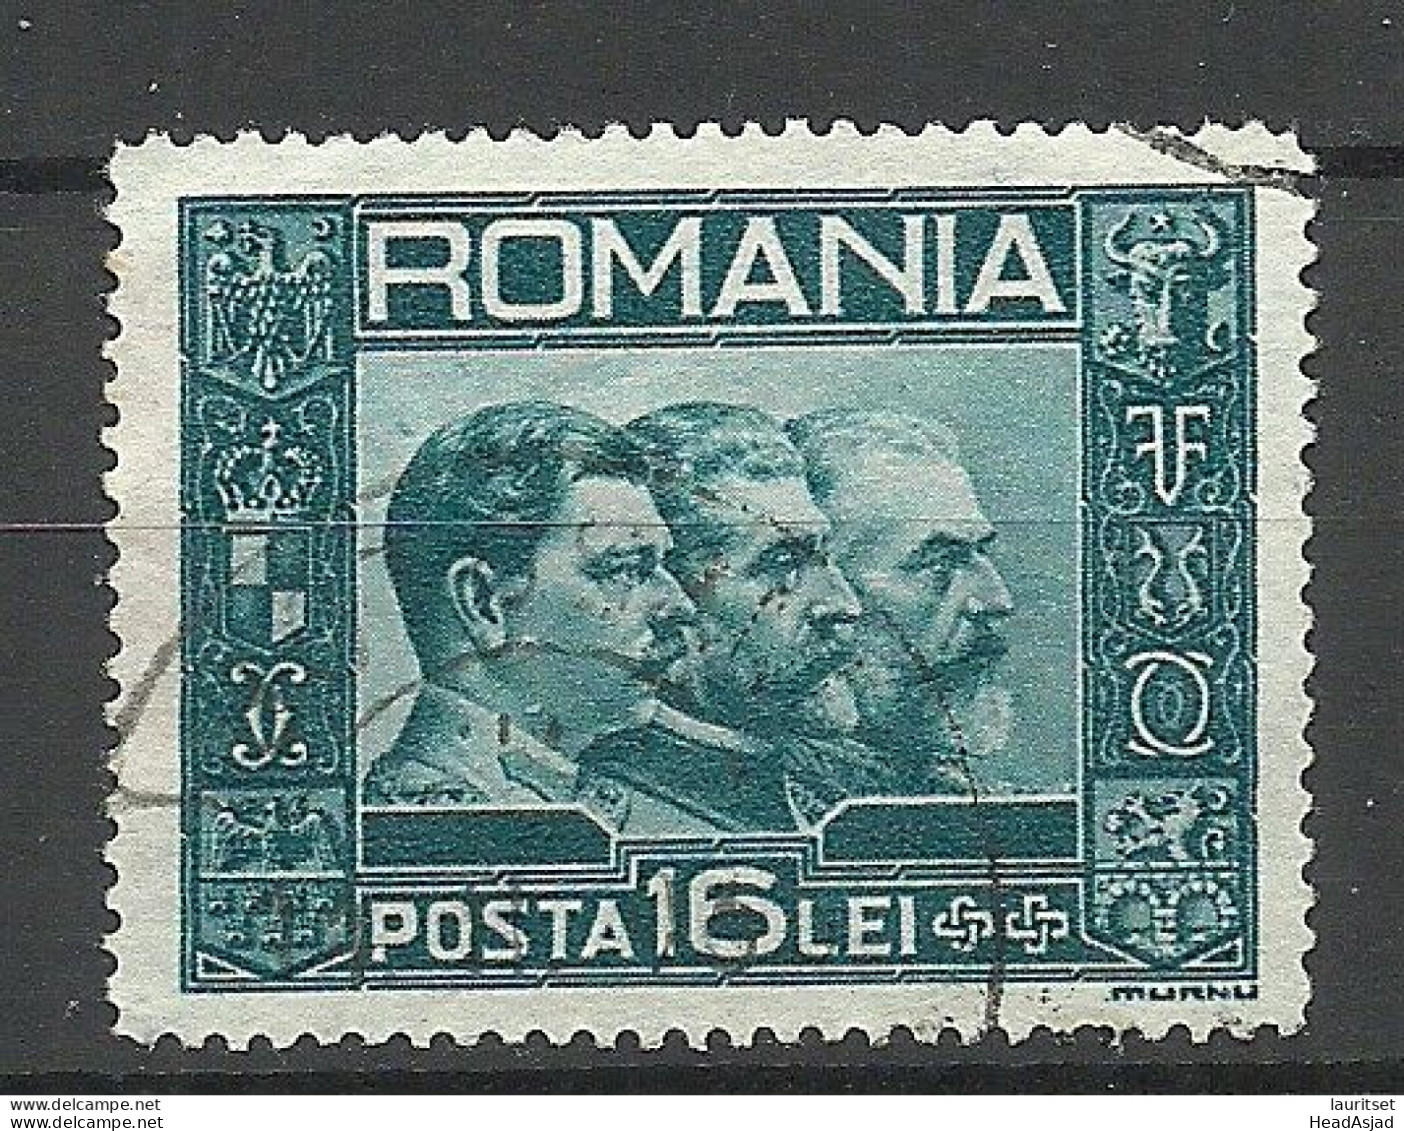 ROMANIA Rumänien 1931 Michel 418 O - Usati